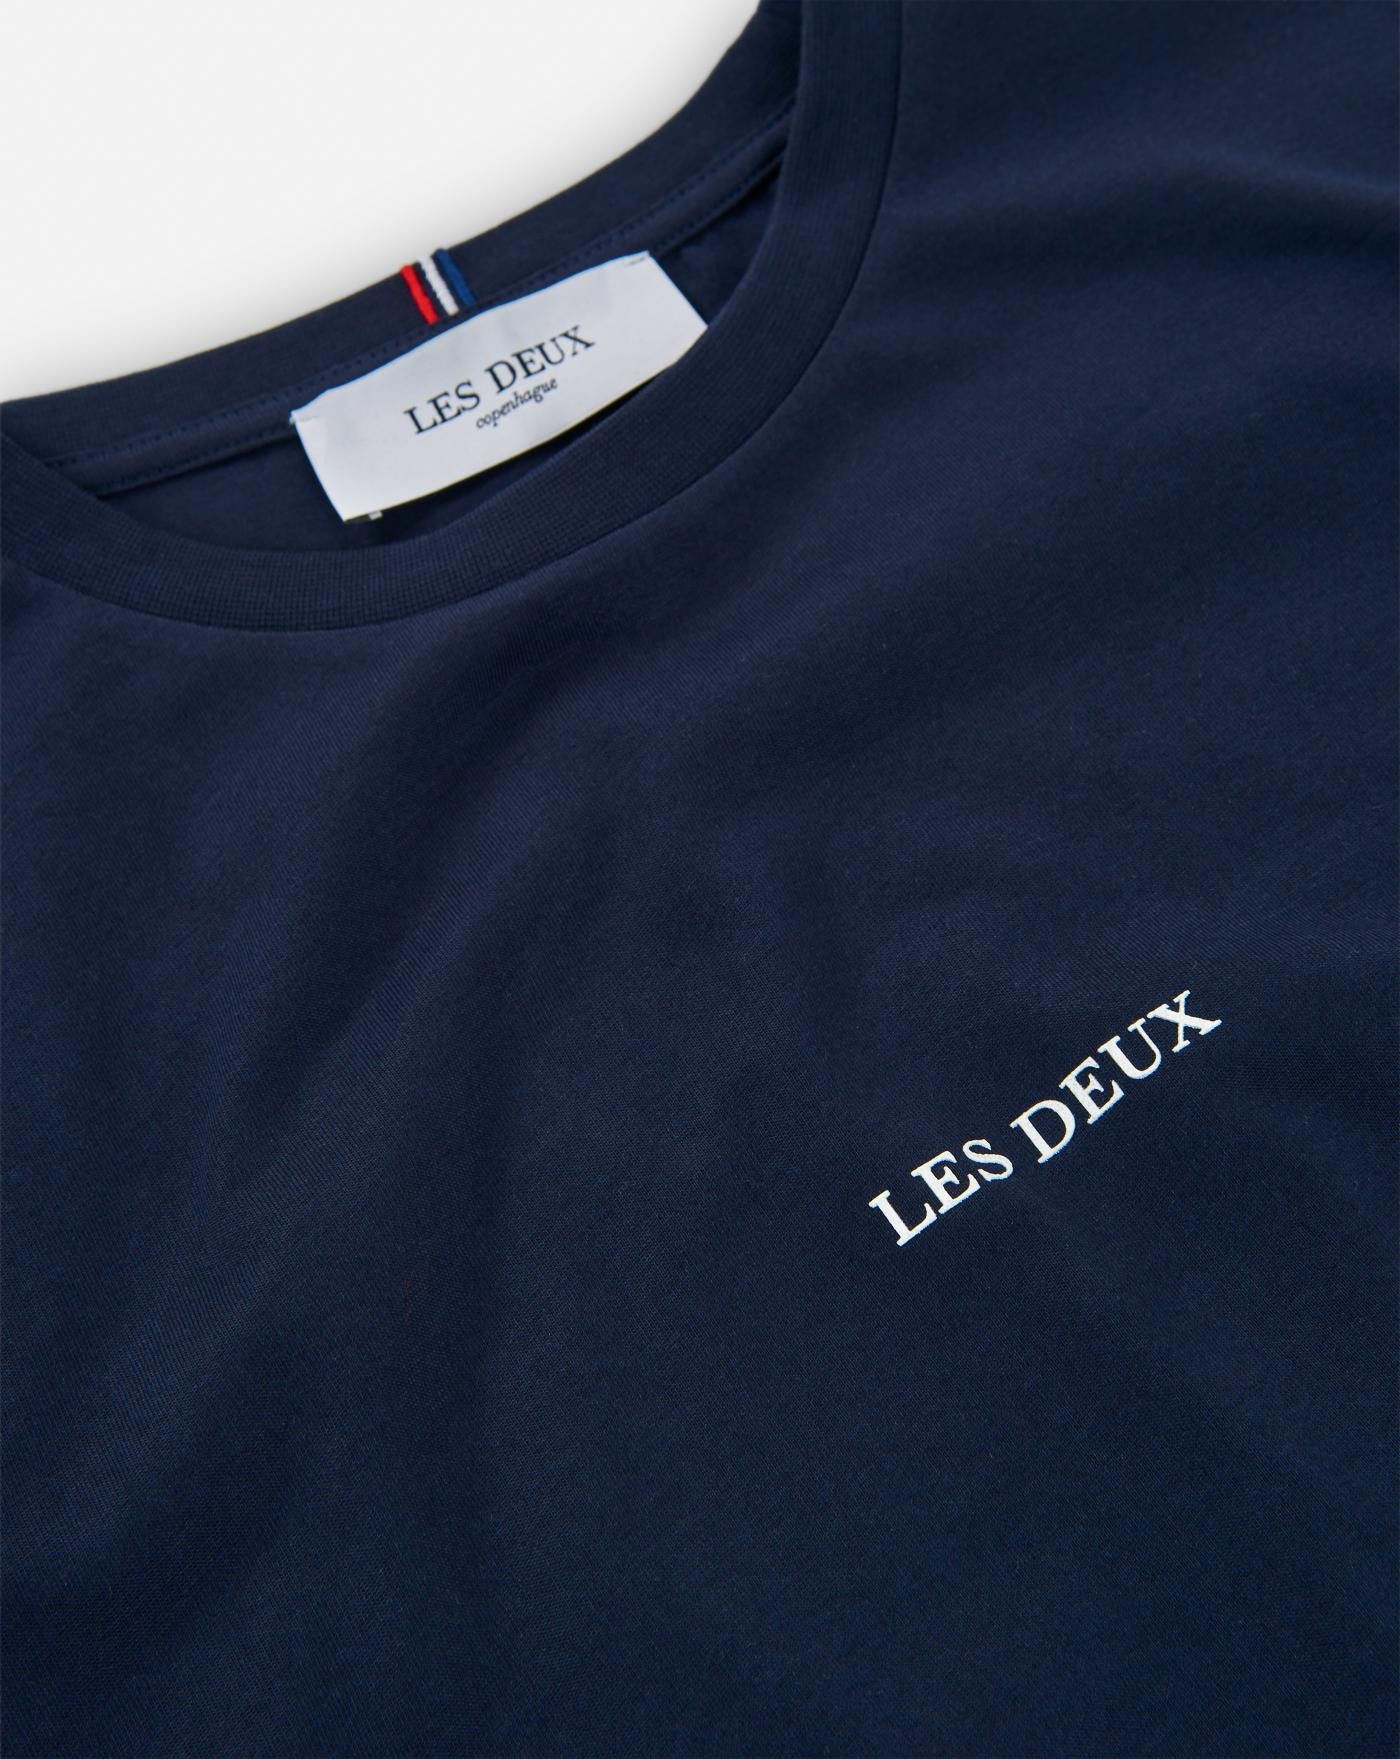 Camiseta Les Deux Lens 2